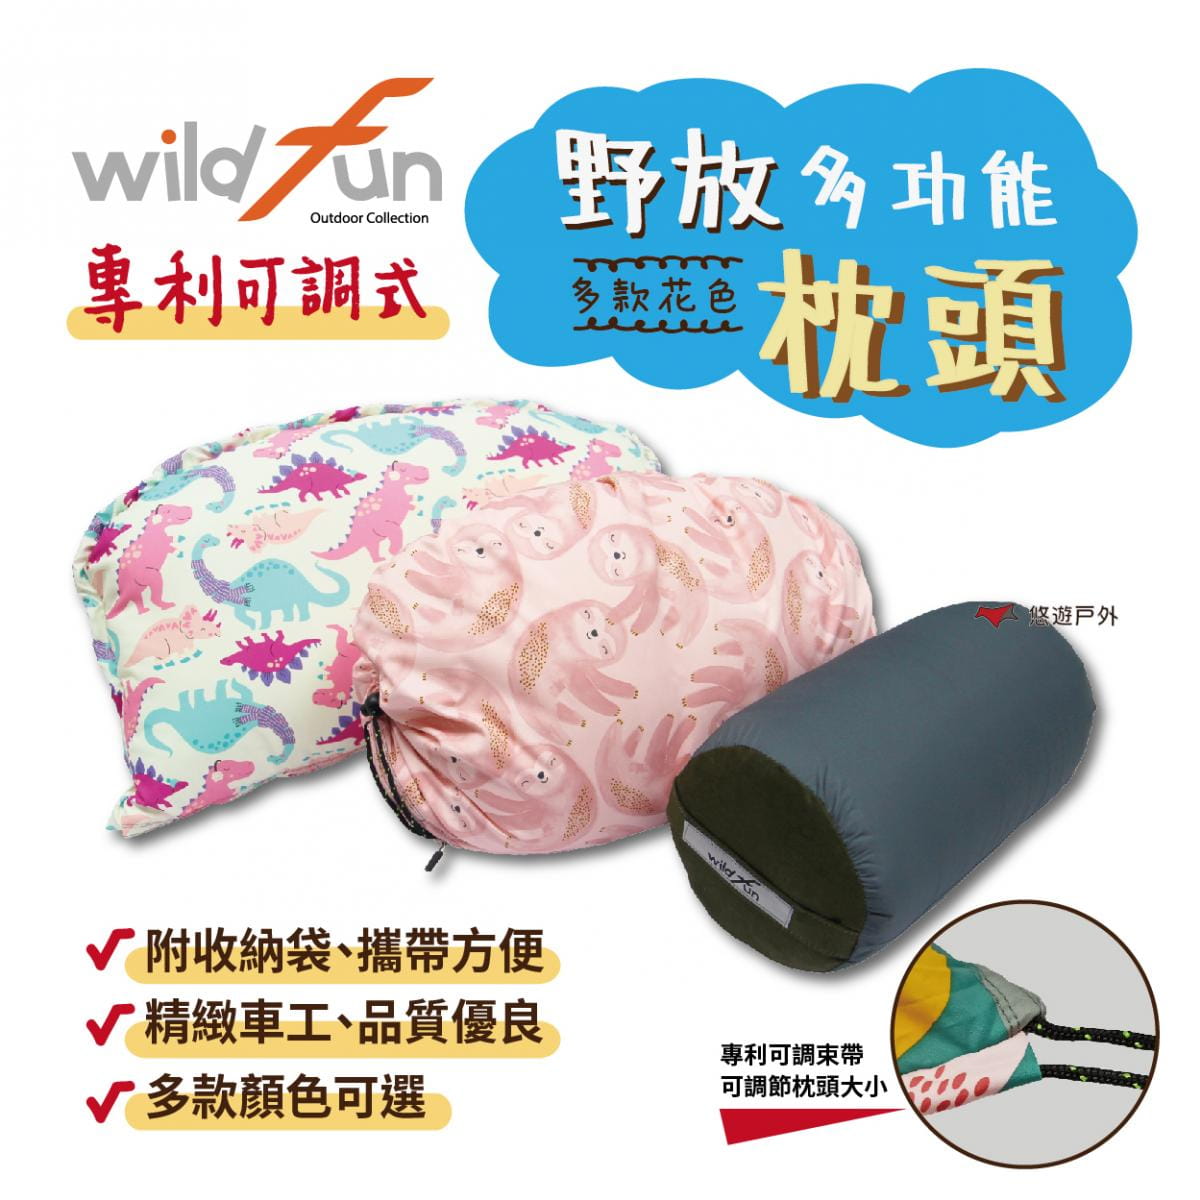 【wildfun野放】專利可調式功能枕頭 (悠遊戶外) 0